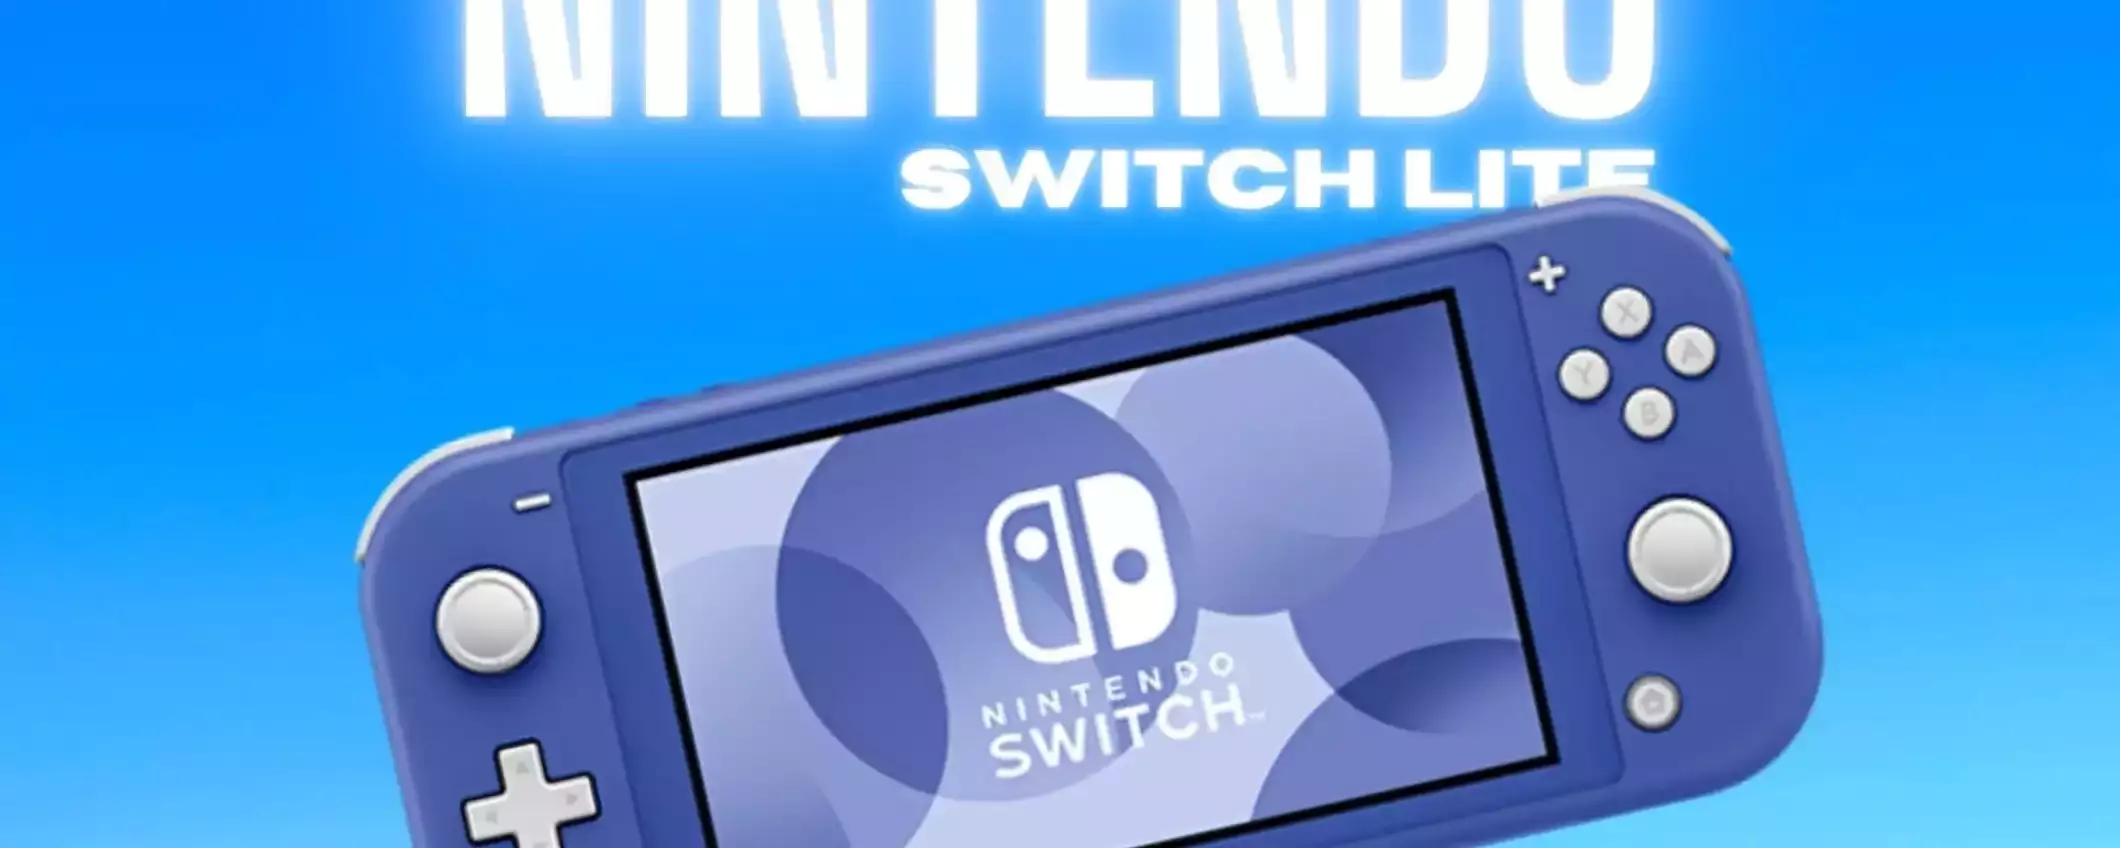 Nintendo Switch Lite: a soli 199€ è la console da comprare OGGI su Amazon